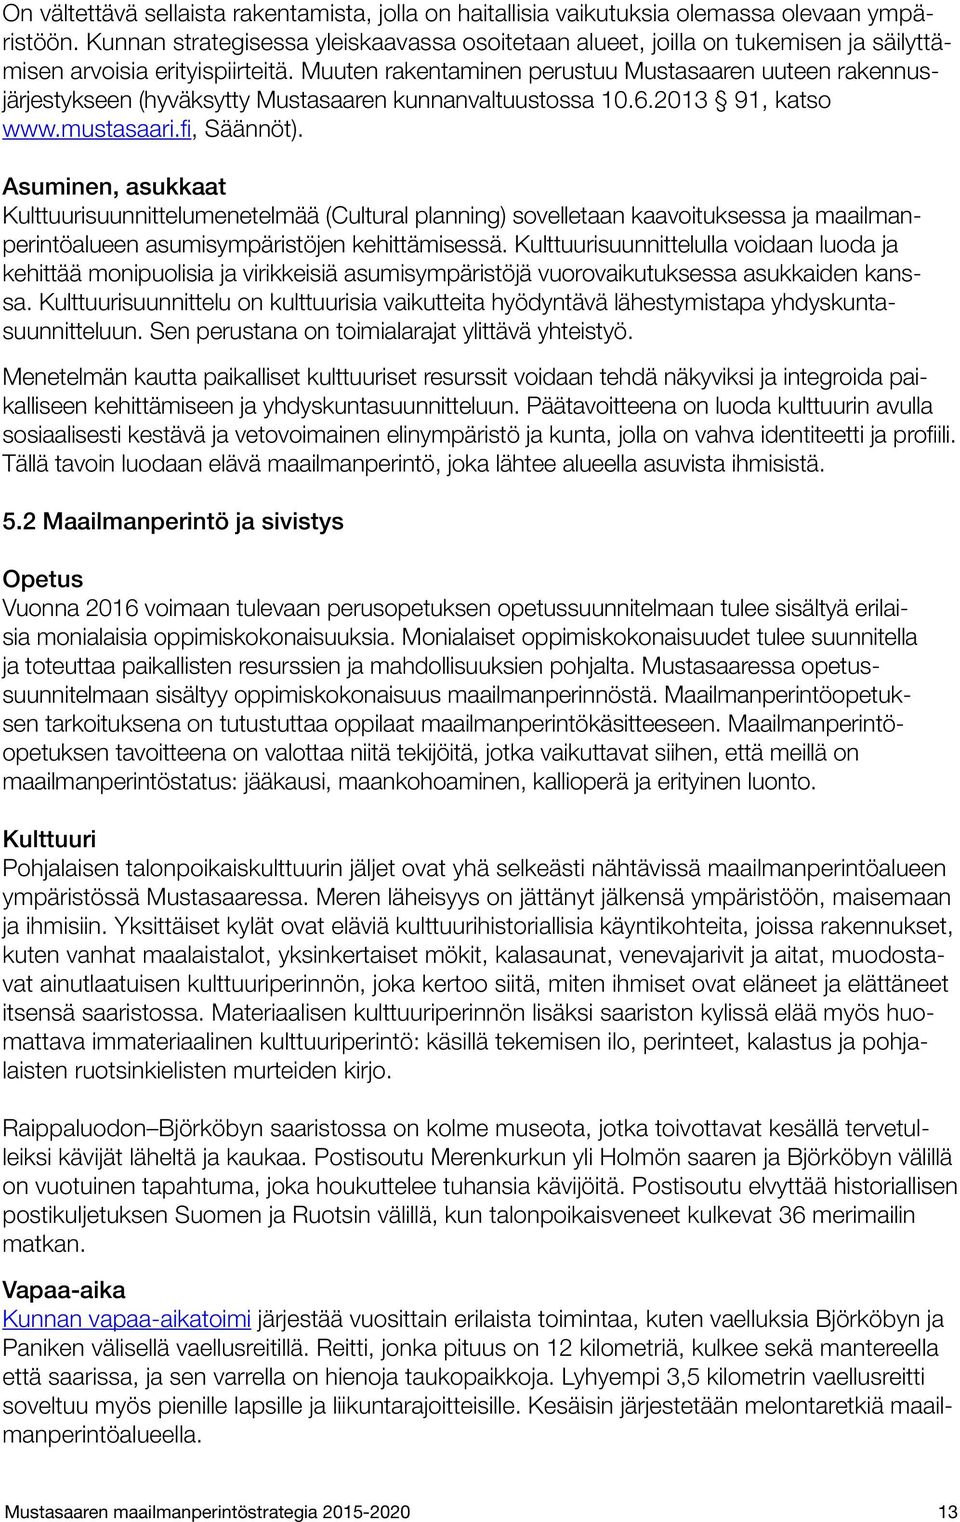 Muuten rakentaminen perustuu Mustasaaren uuteen rakennusjärjestykseen (hyväksytty Mustasaaren kunnanvaltuustossa 10.6.2013 91, katso www.mustasaari.fi, Säännöt).